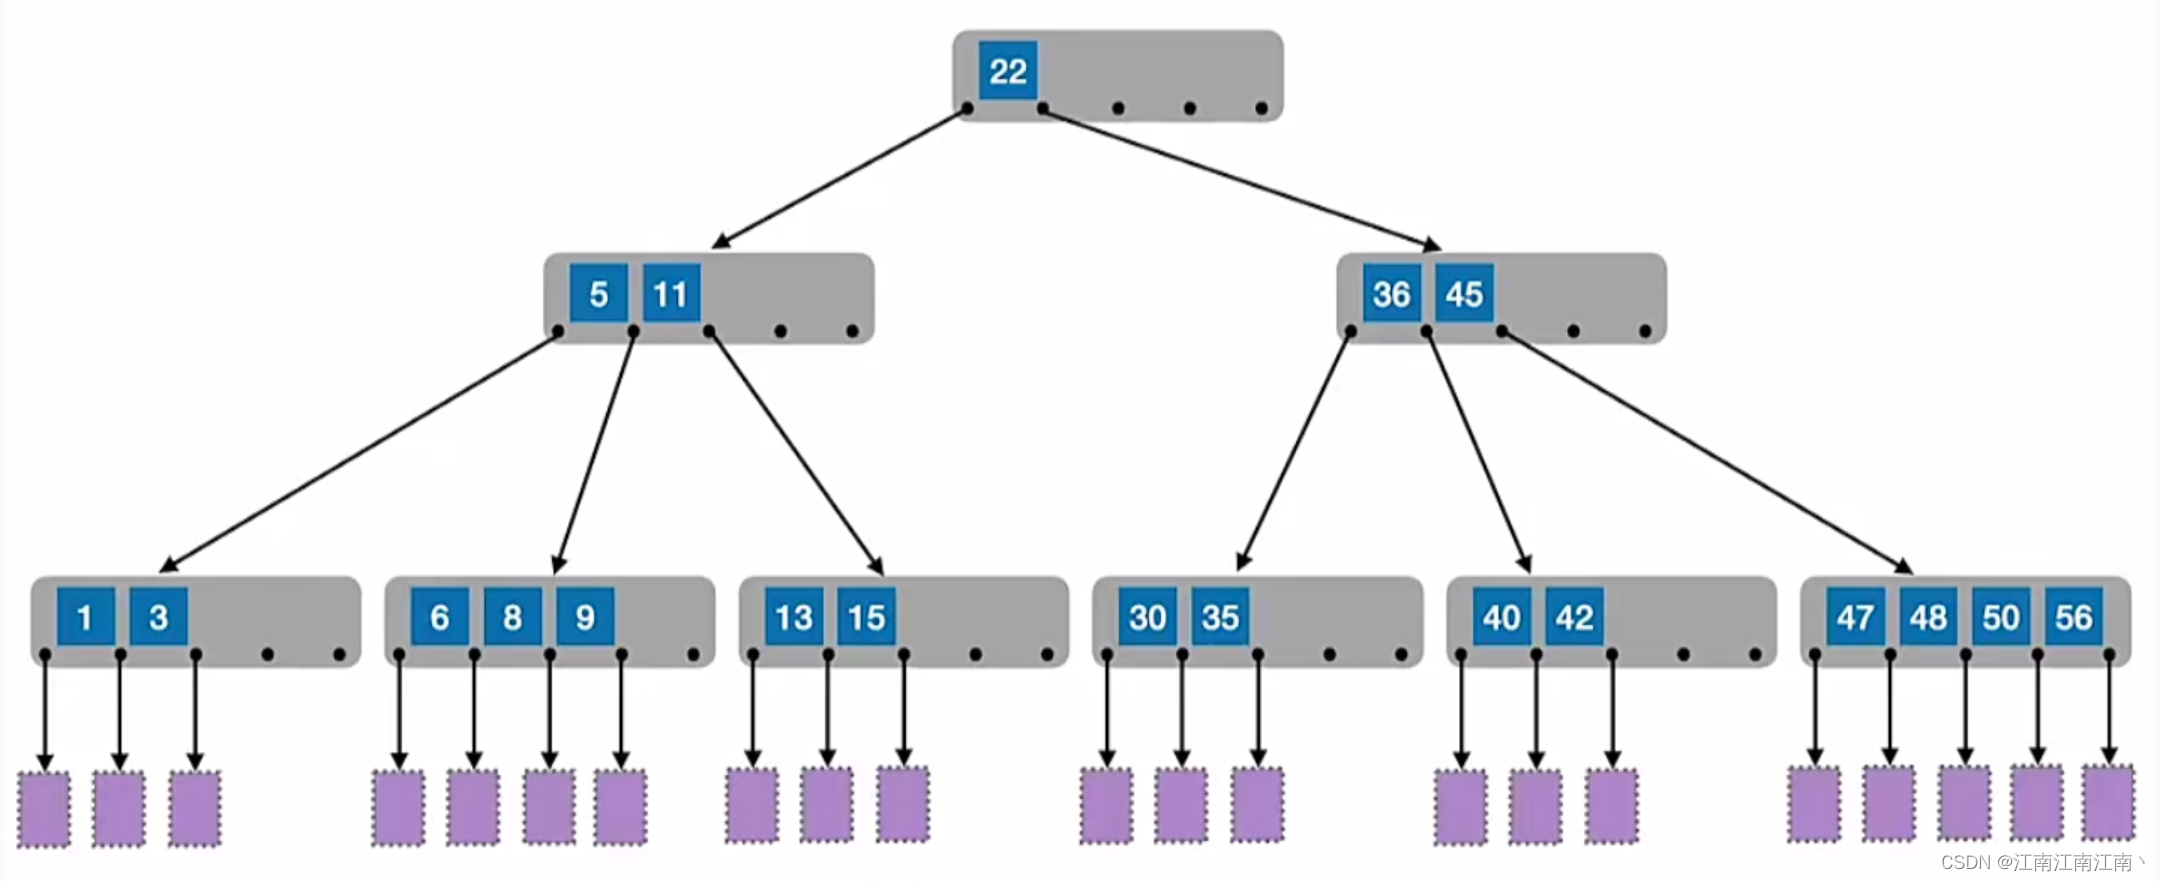 408数据结构学习笔记——B树、B+树、散列表